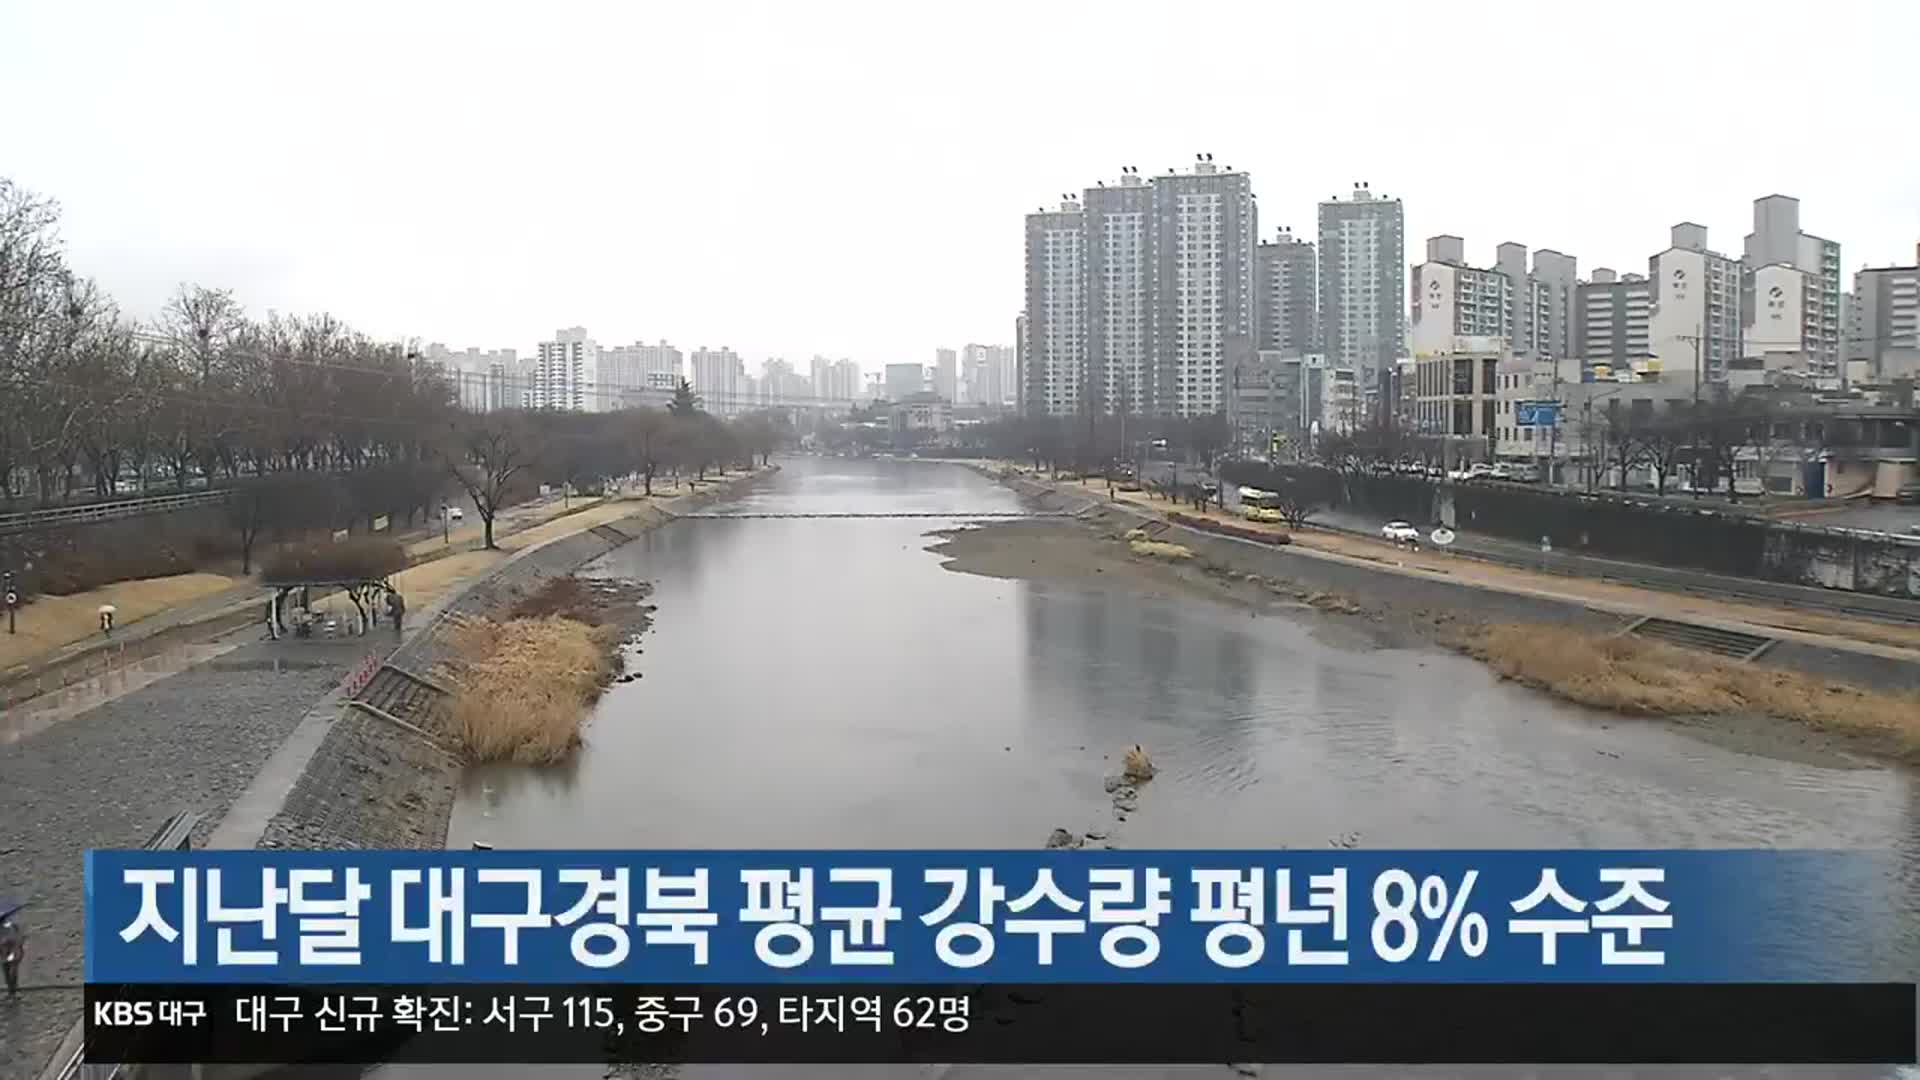 지난달 대구·경북 평균 강수량 평년 8% 수준